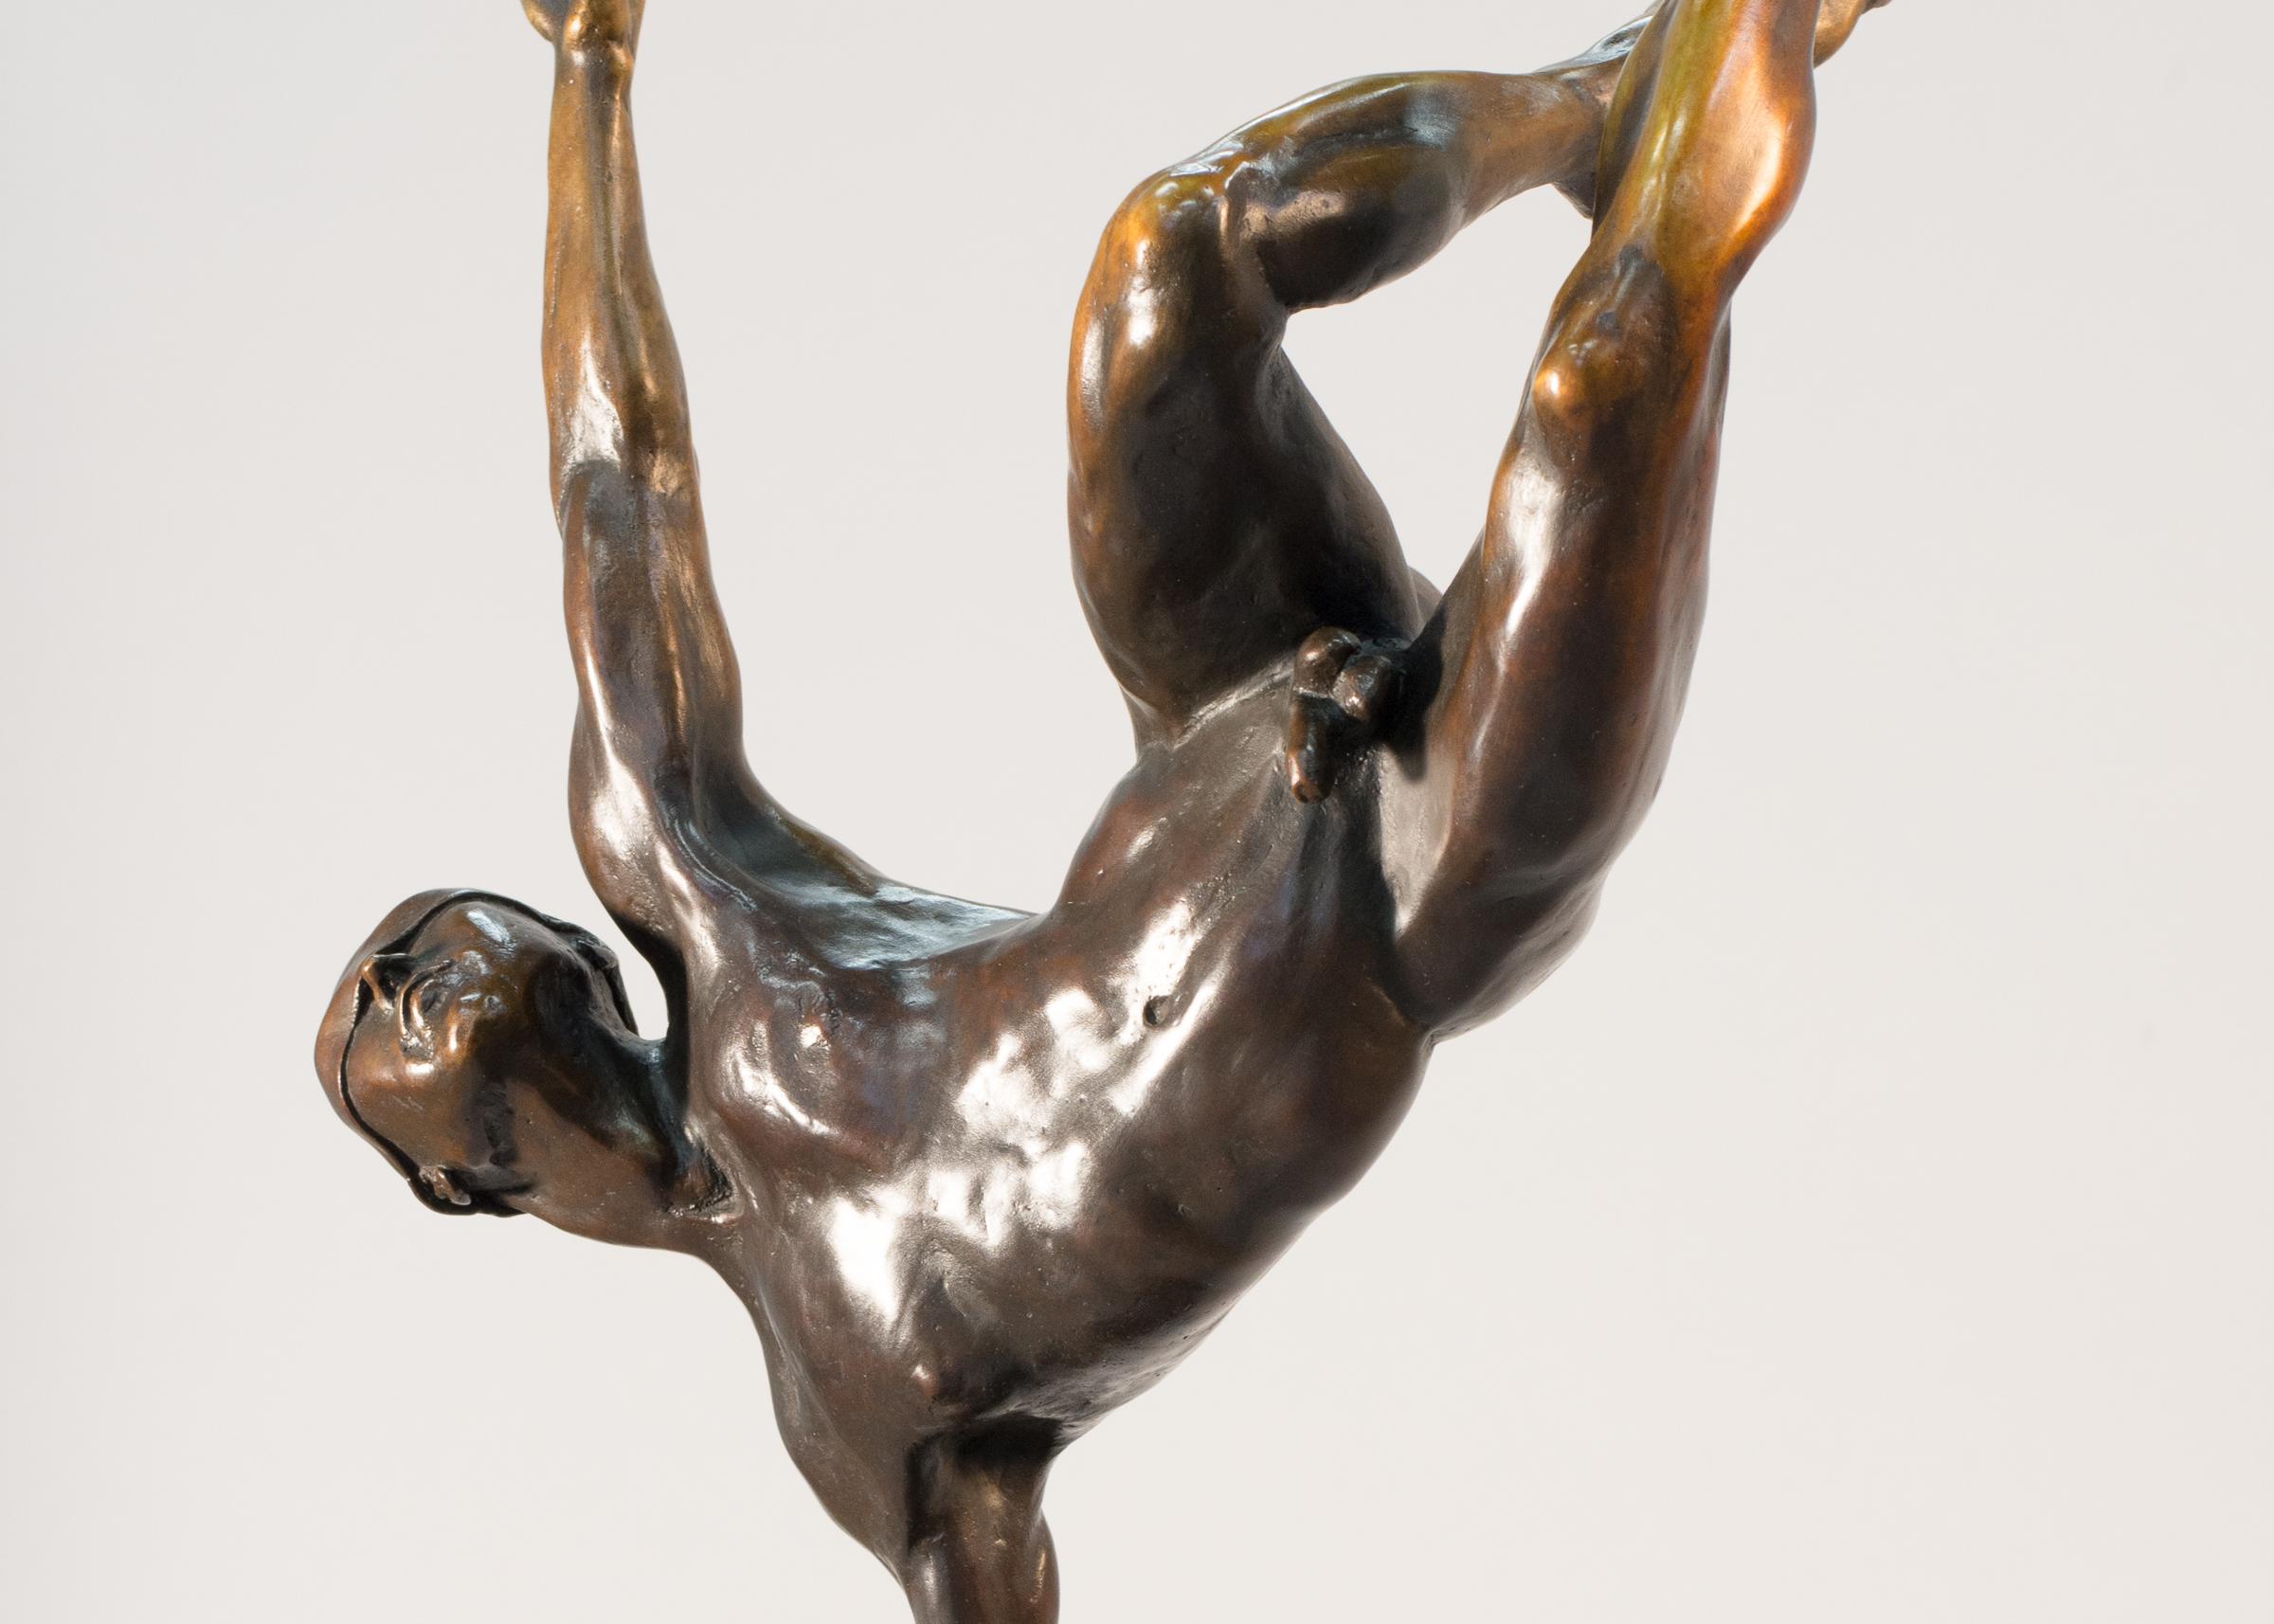 Yearning 1/9 – männlich, nackt, figurativ, statuette, Bronzeskulptur (Gold), Figurative Sculpture, von W.W. Hung